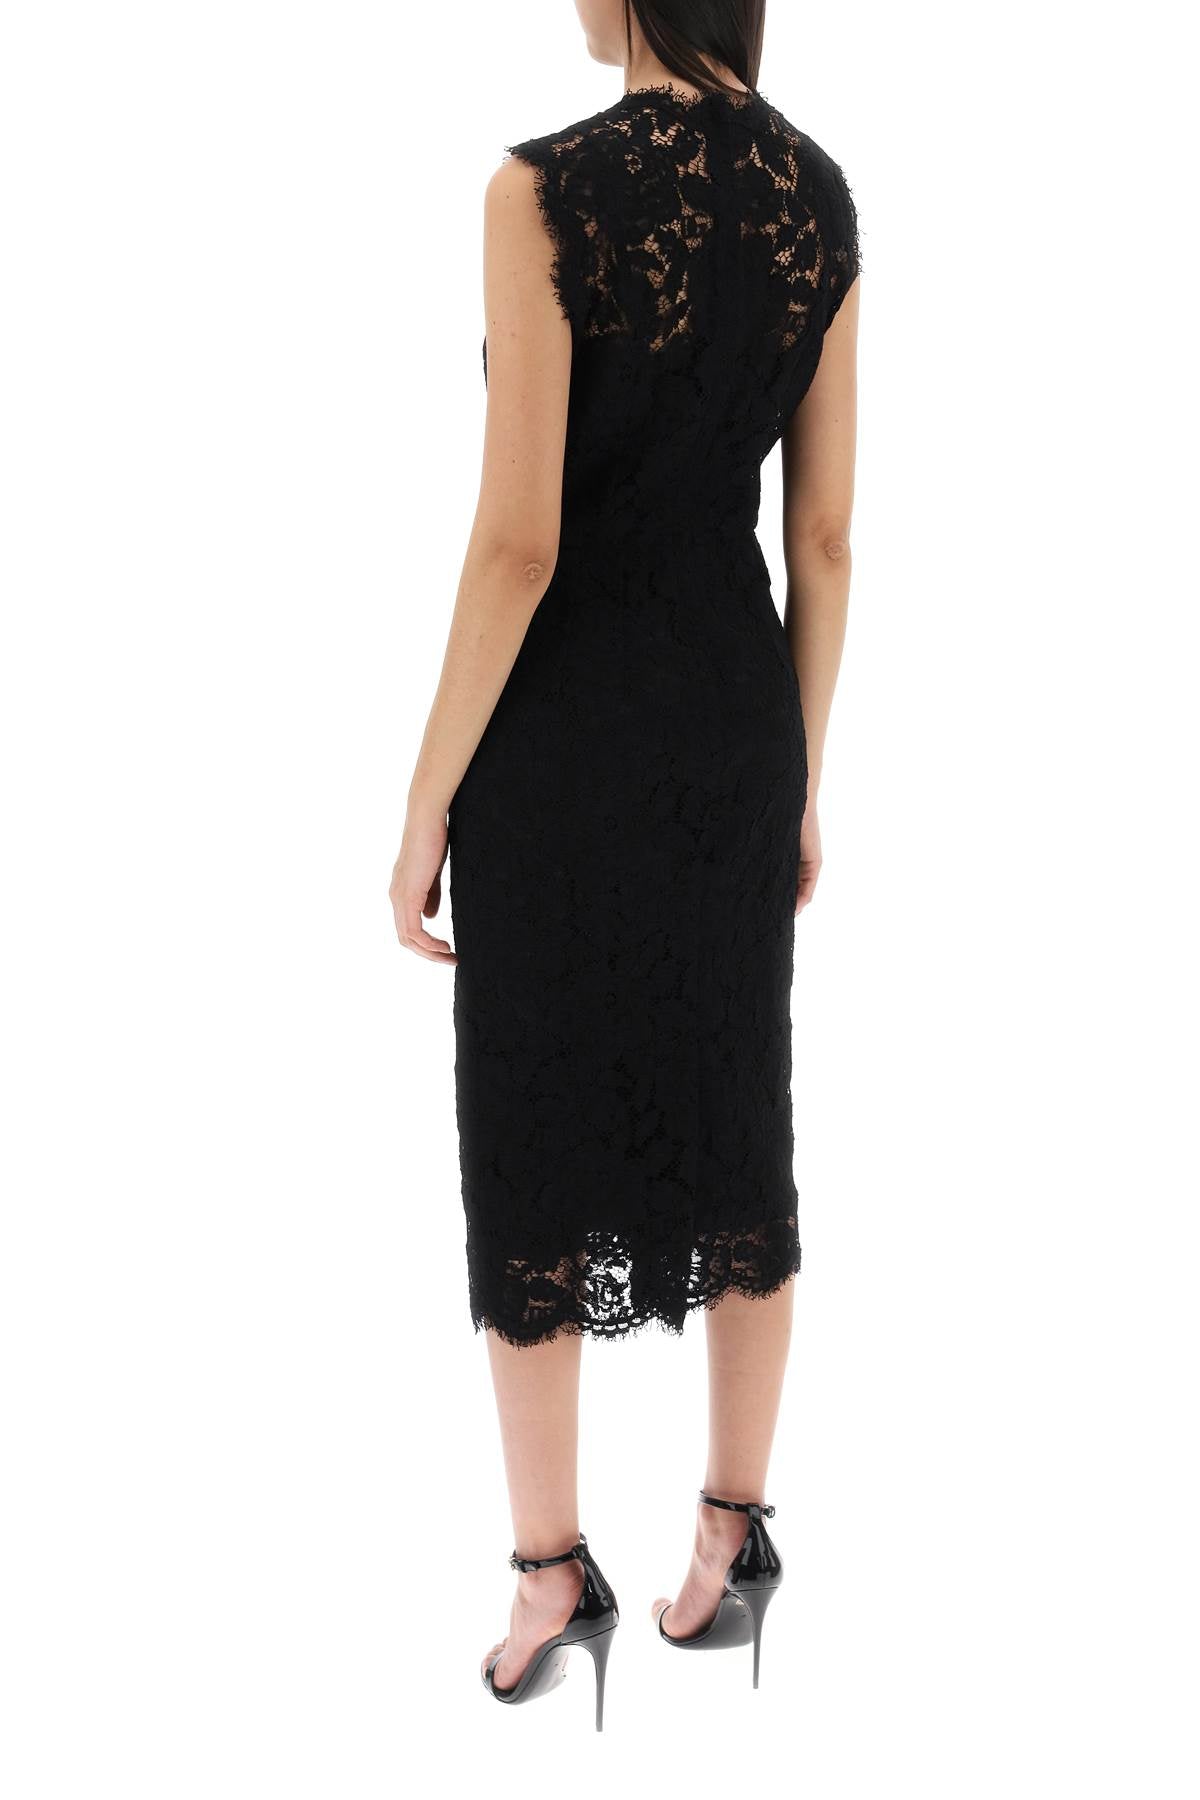 Dolce & Gabbana Dolce & gabbana lace sheath dress with a